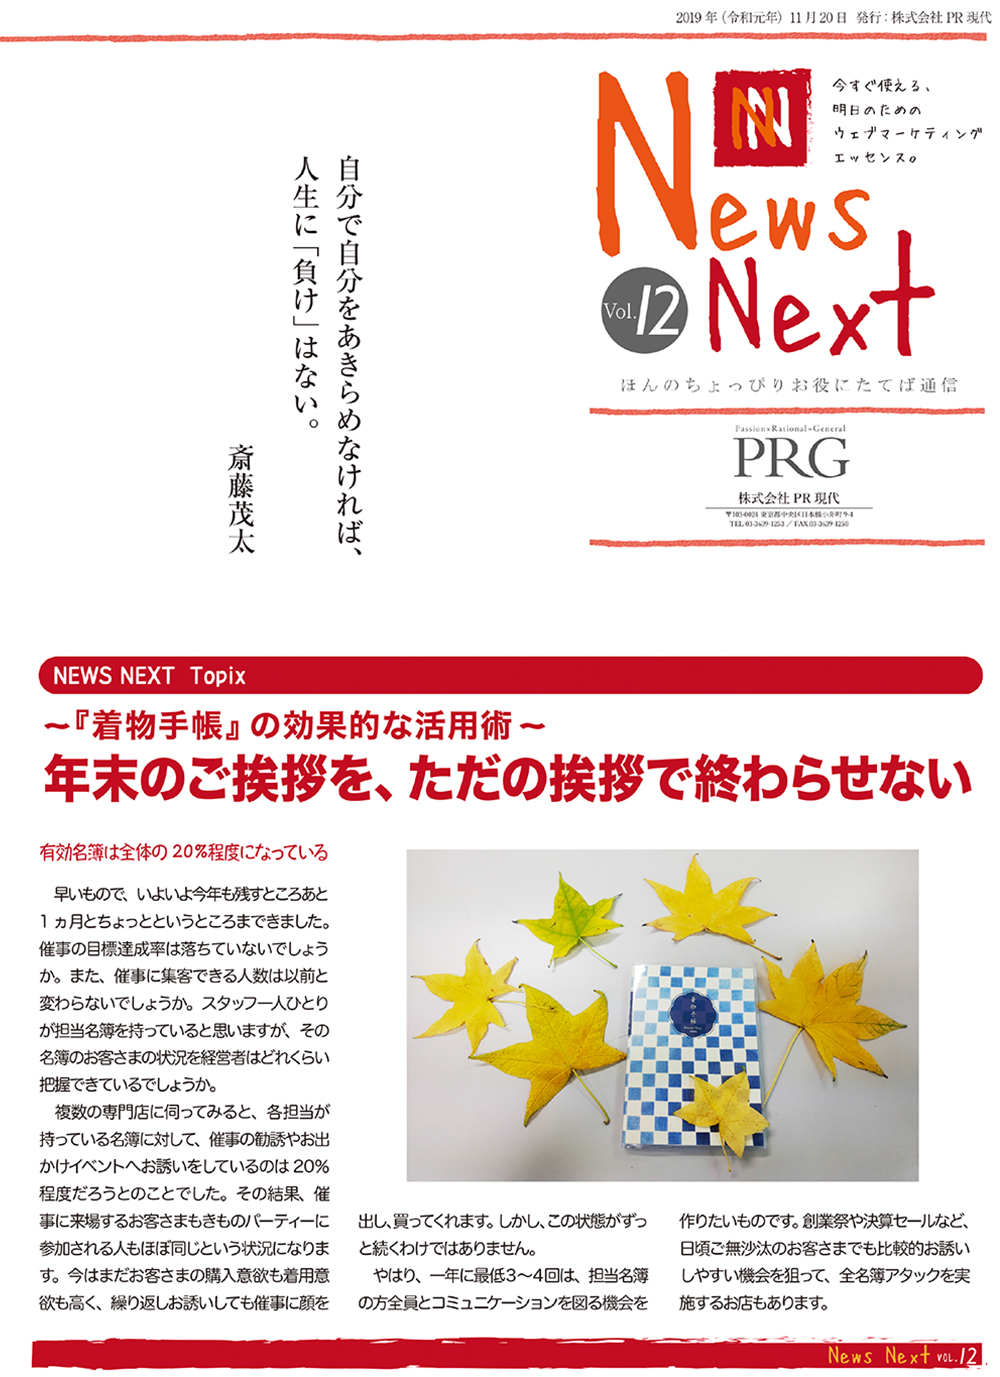 News NEXT vol.12